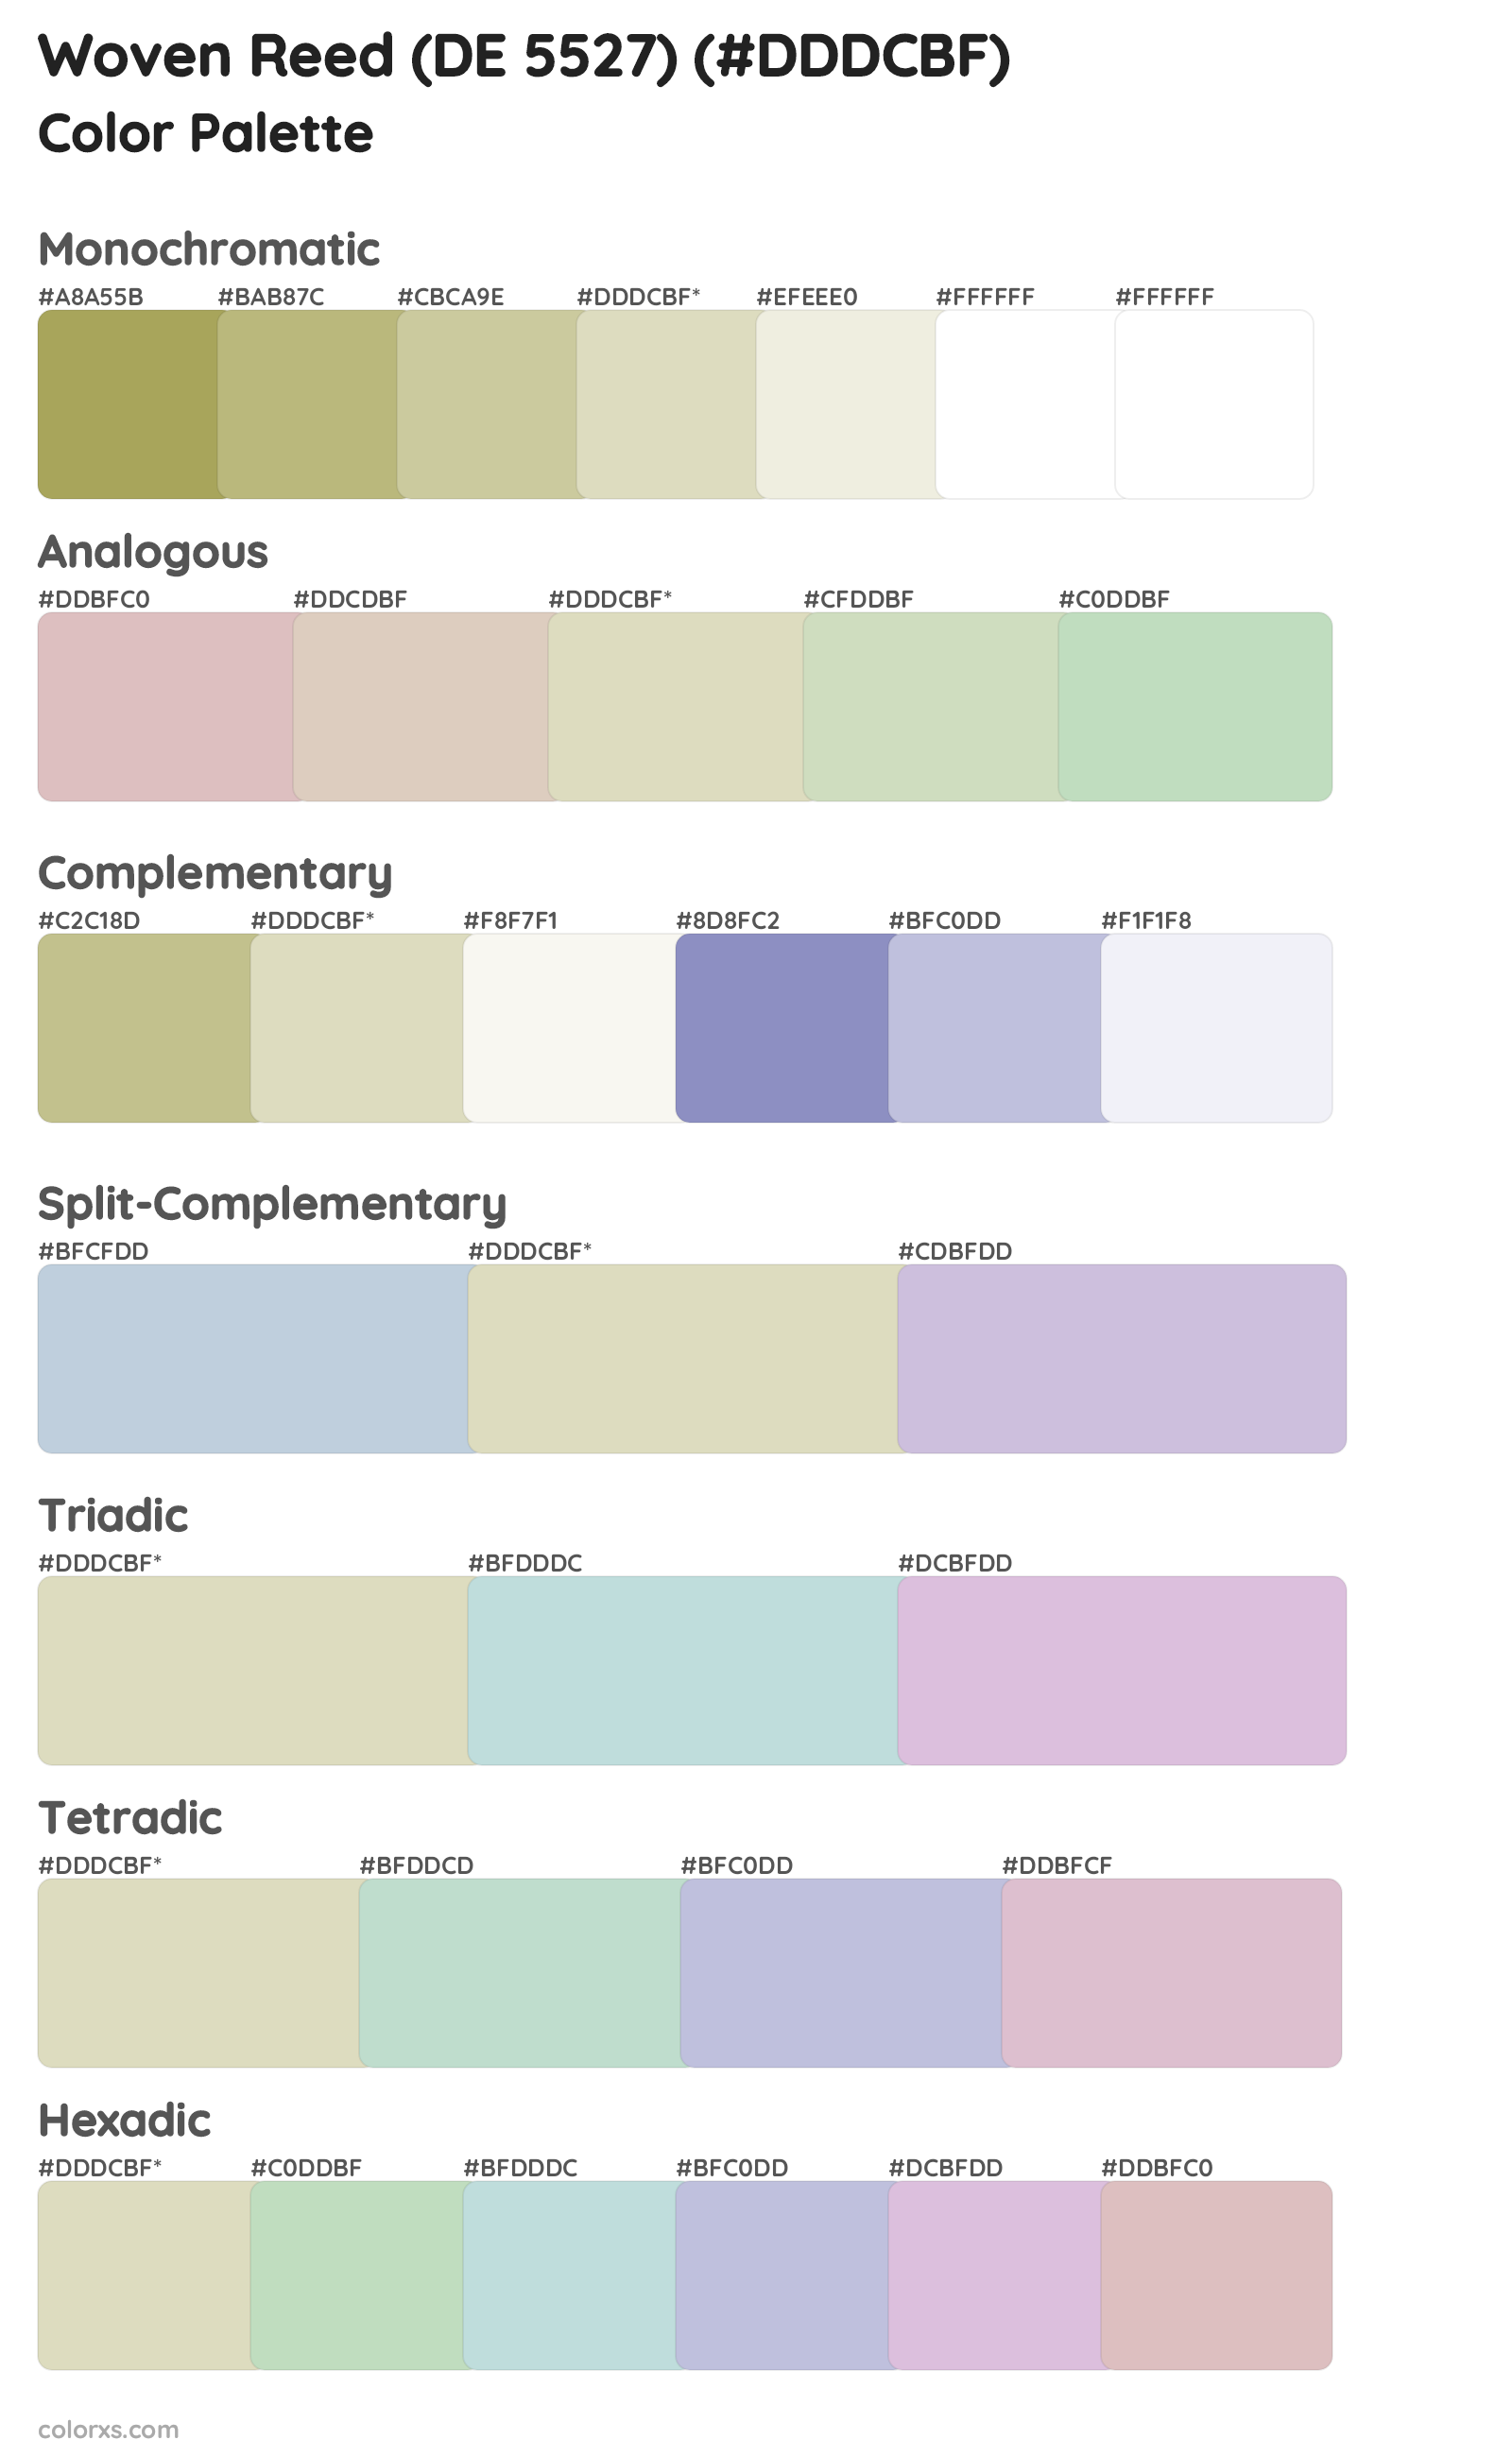 Woven Reed (DE 5527) Color Scheme Palettes